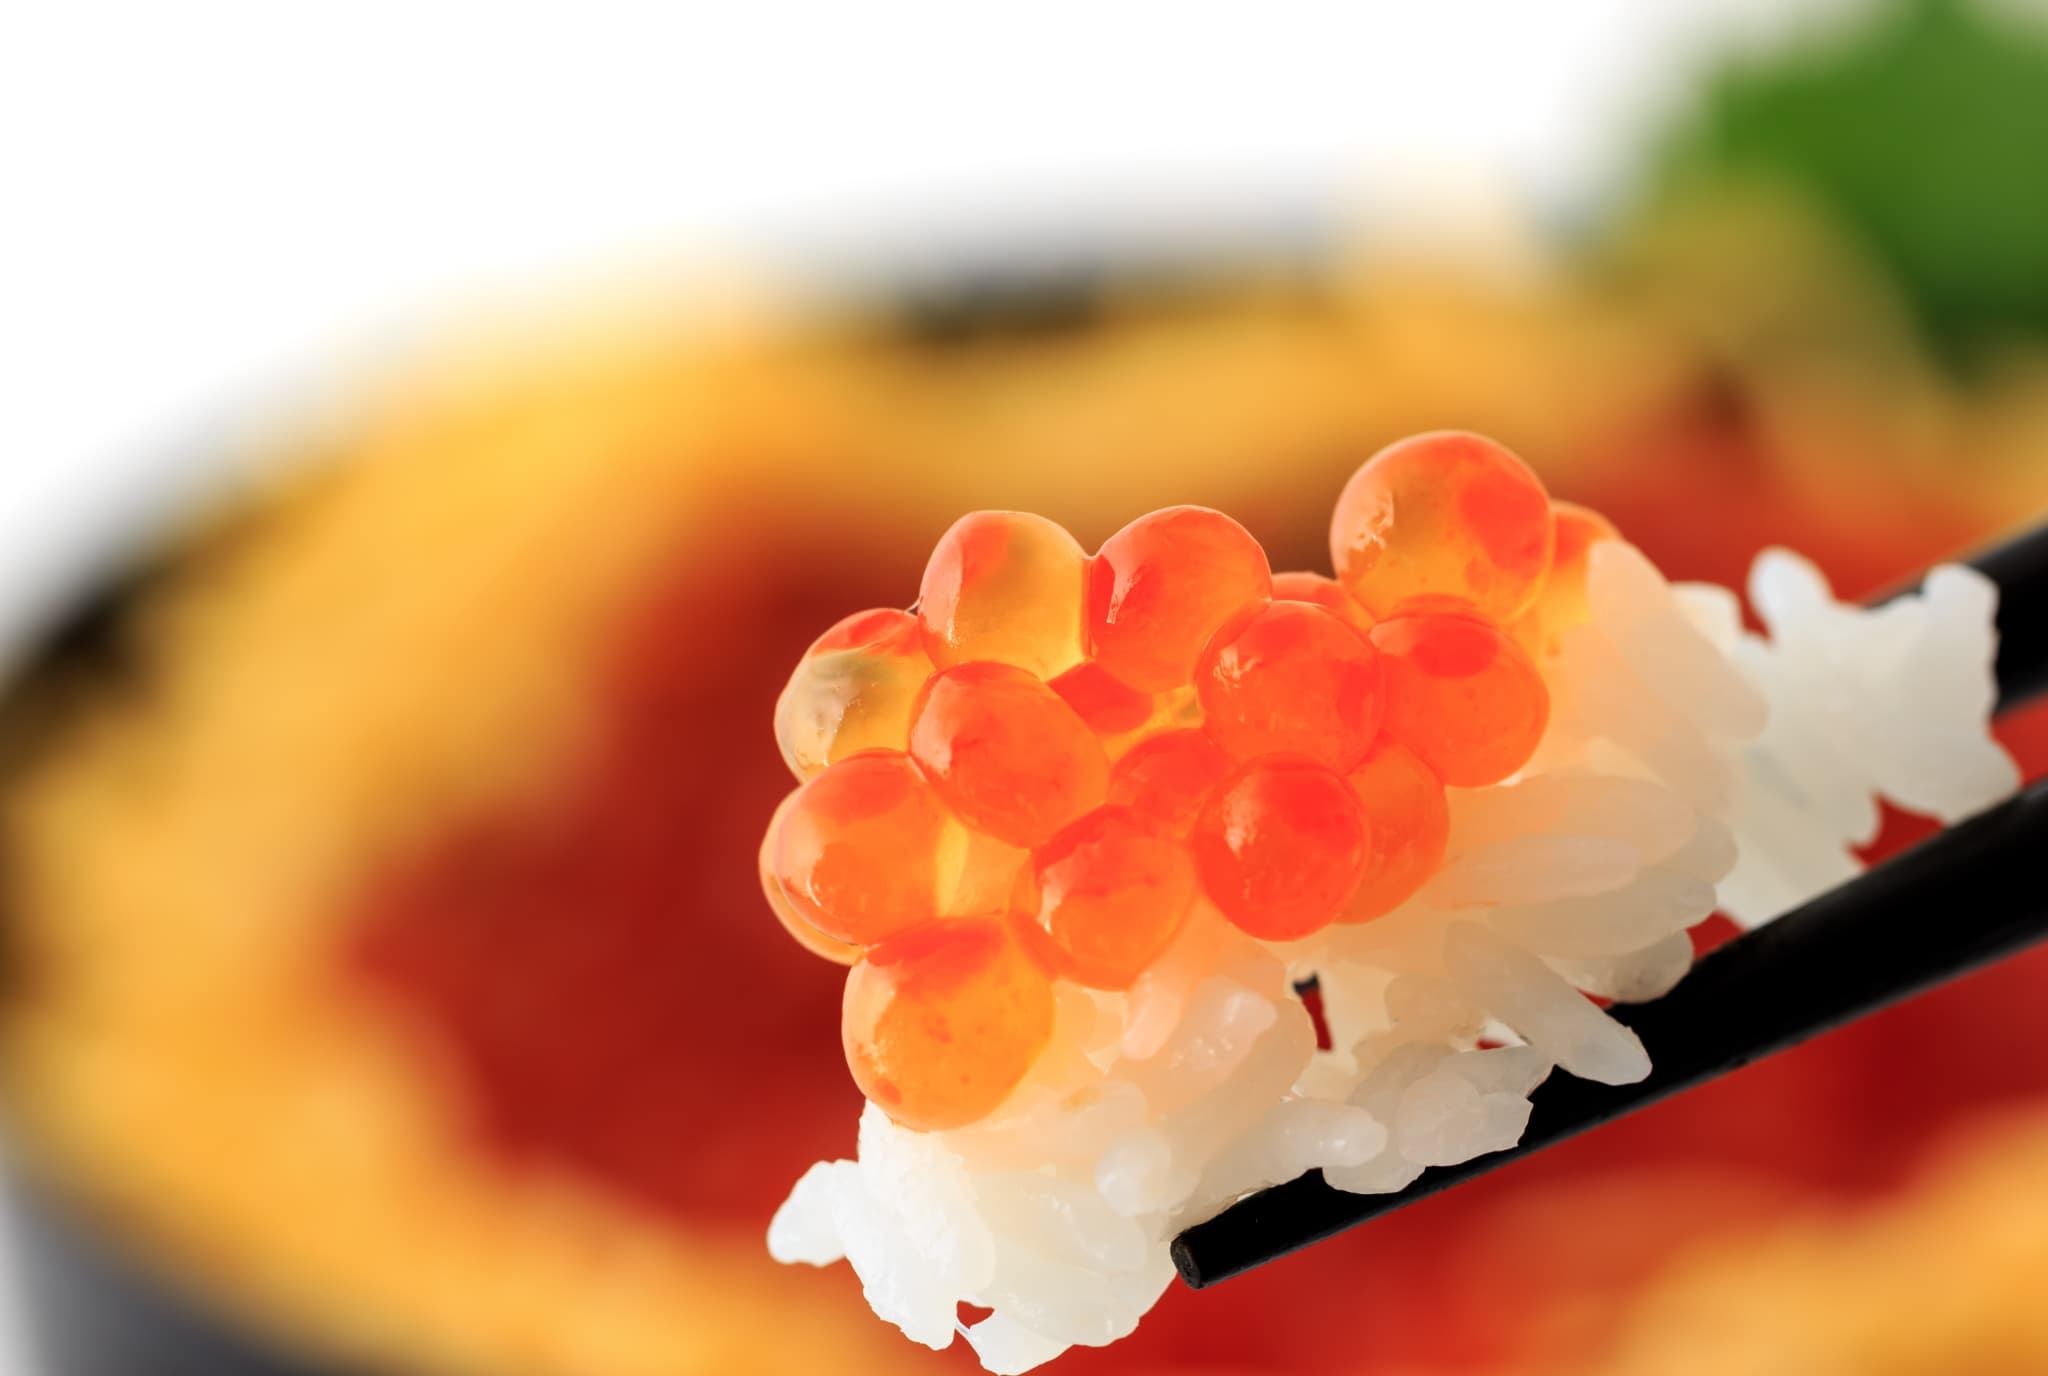 日本の魚食文化 世界に誇れる美味しい食文化